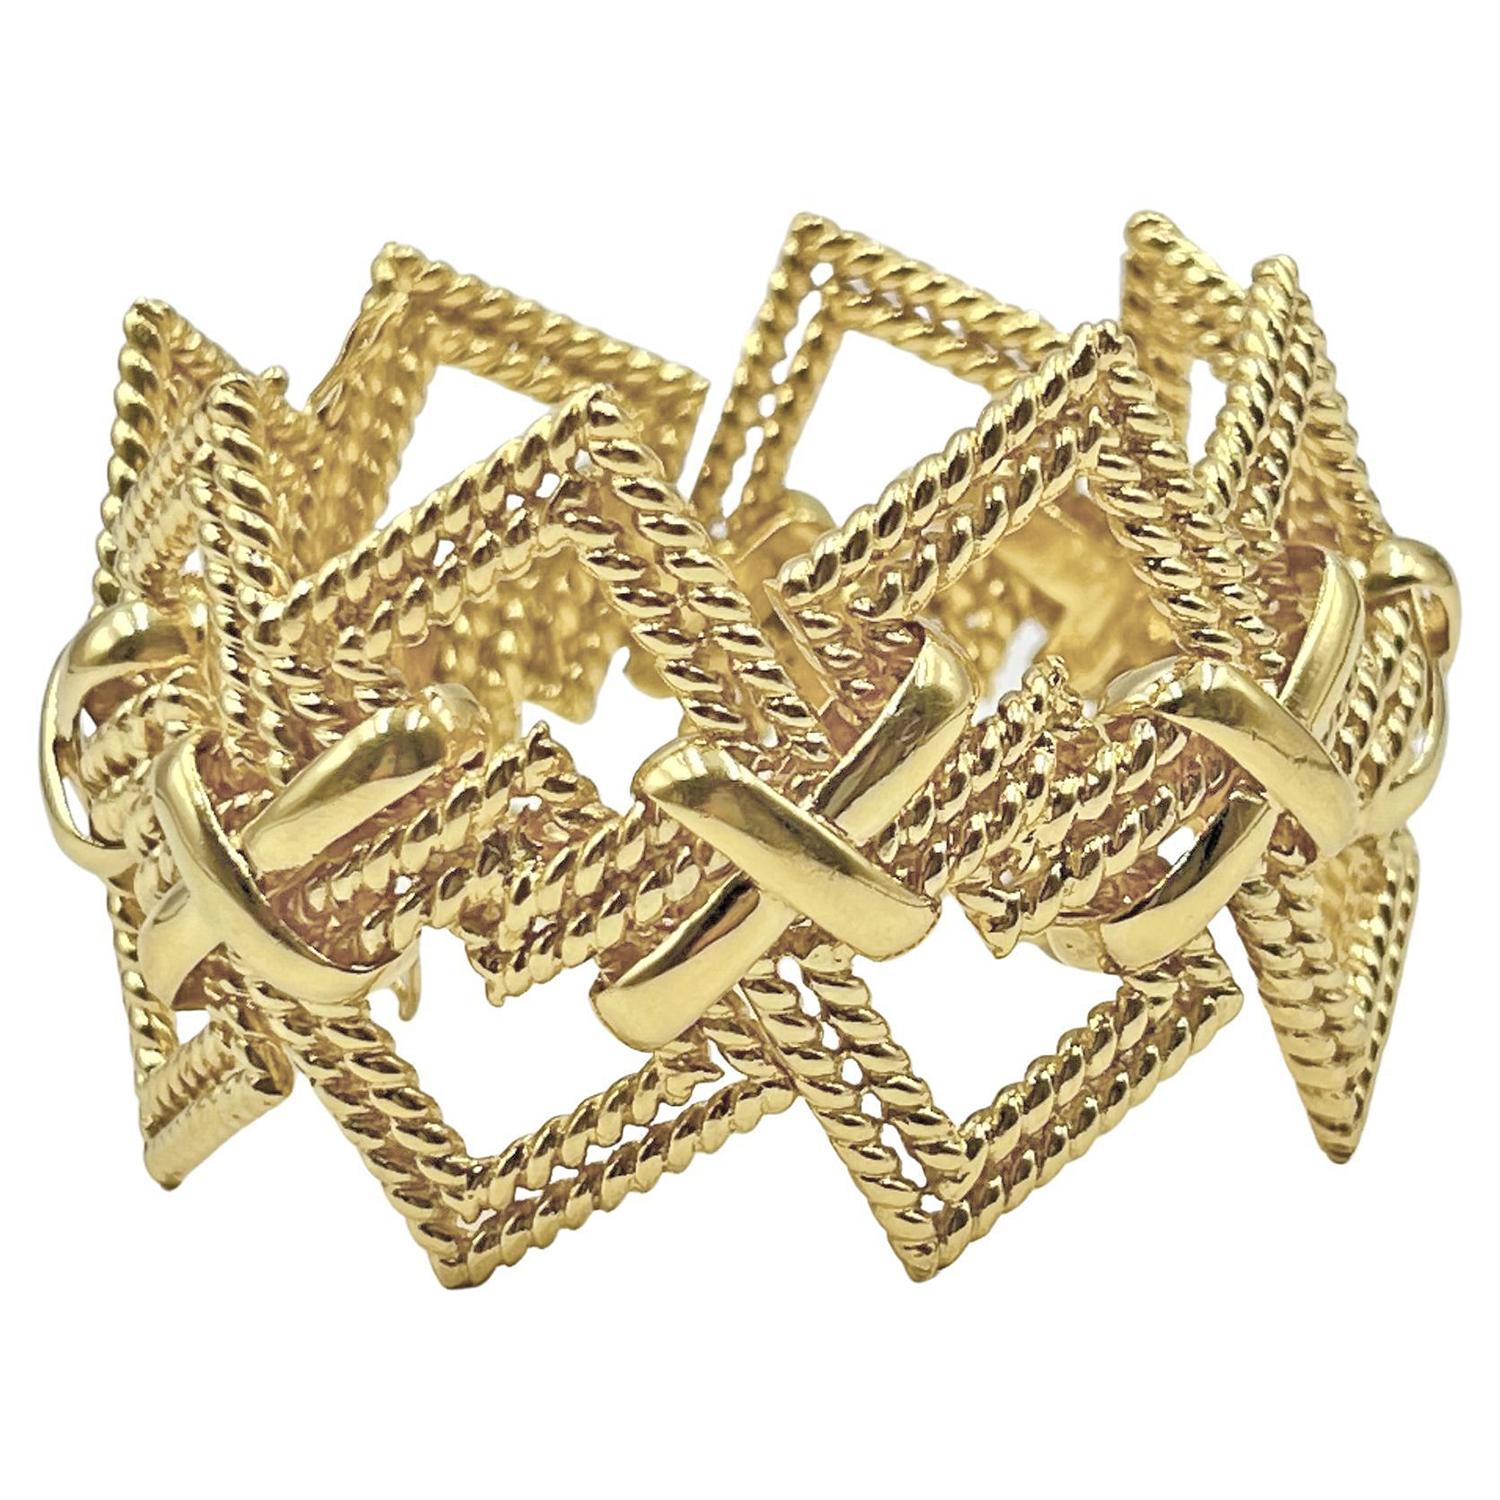 Découvrez l'élégance durable d'un bracelet vintage en or 18 carats de Tiffany & Co. datant des années 1970. Cette pièce emblématique présente des carrés imbriqués les uns dans les autres, reliés par le motif bien-aimé et distinctif du 